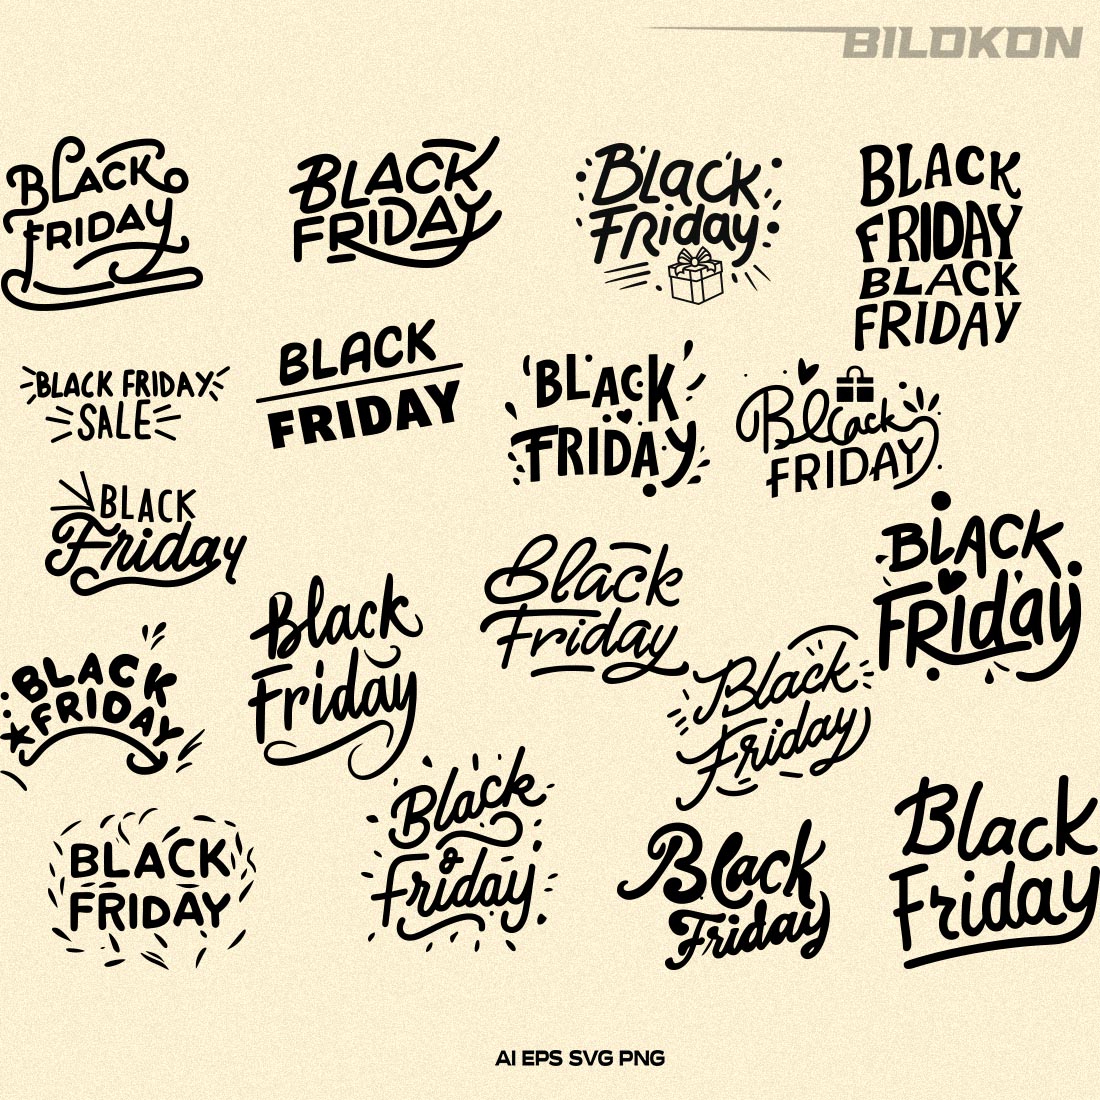 Black Friday SVG Bundle 18 File, Black Friday Sale Vector preview image.